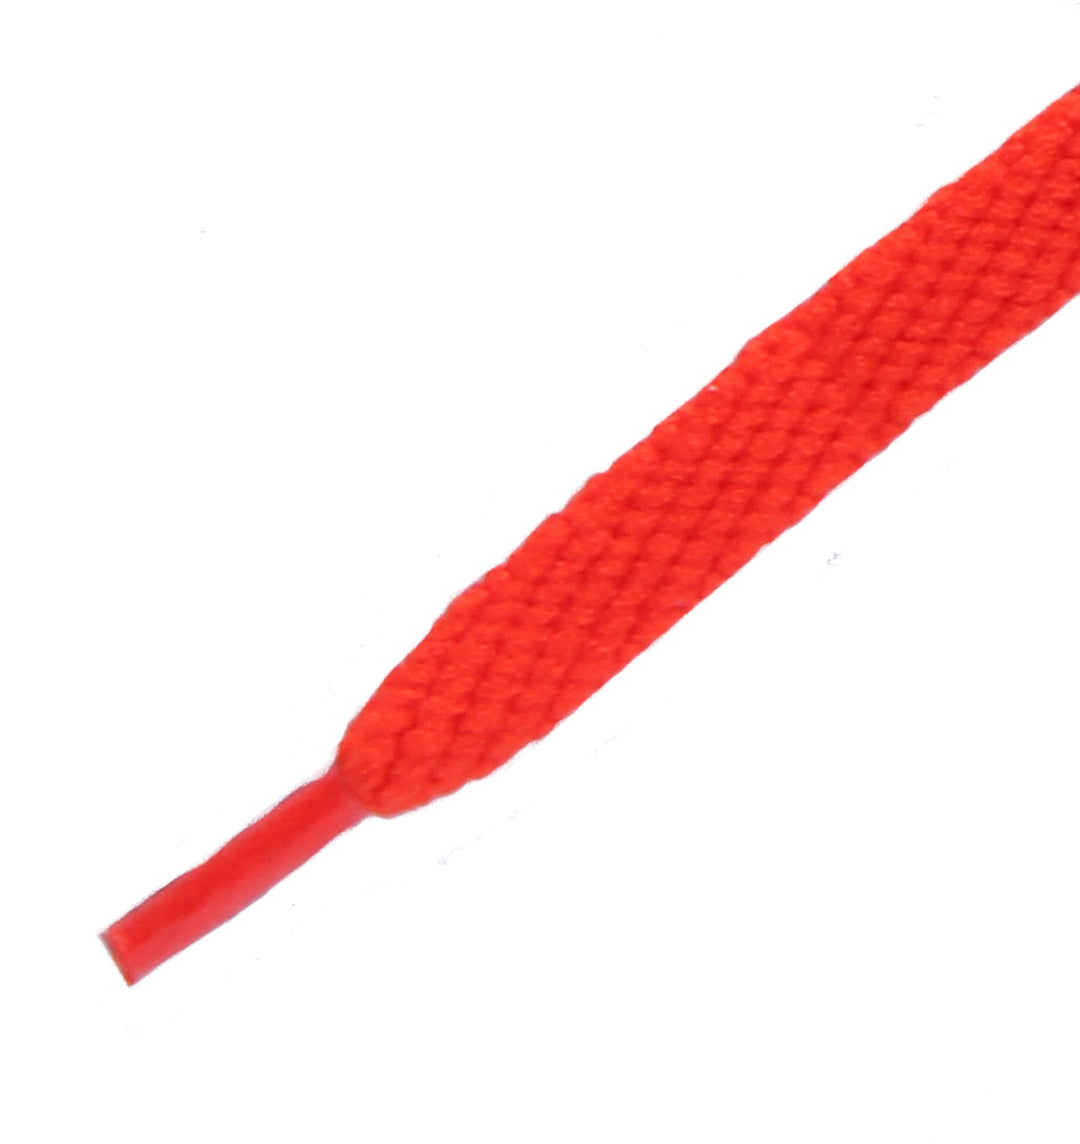 Tipstar Cordones planos largos de 125 cm para unisex en negro